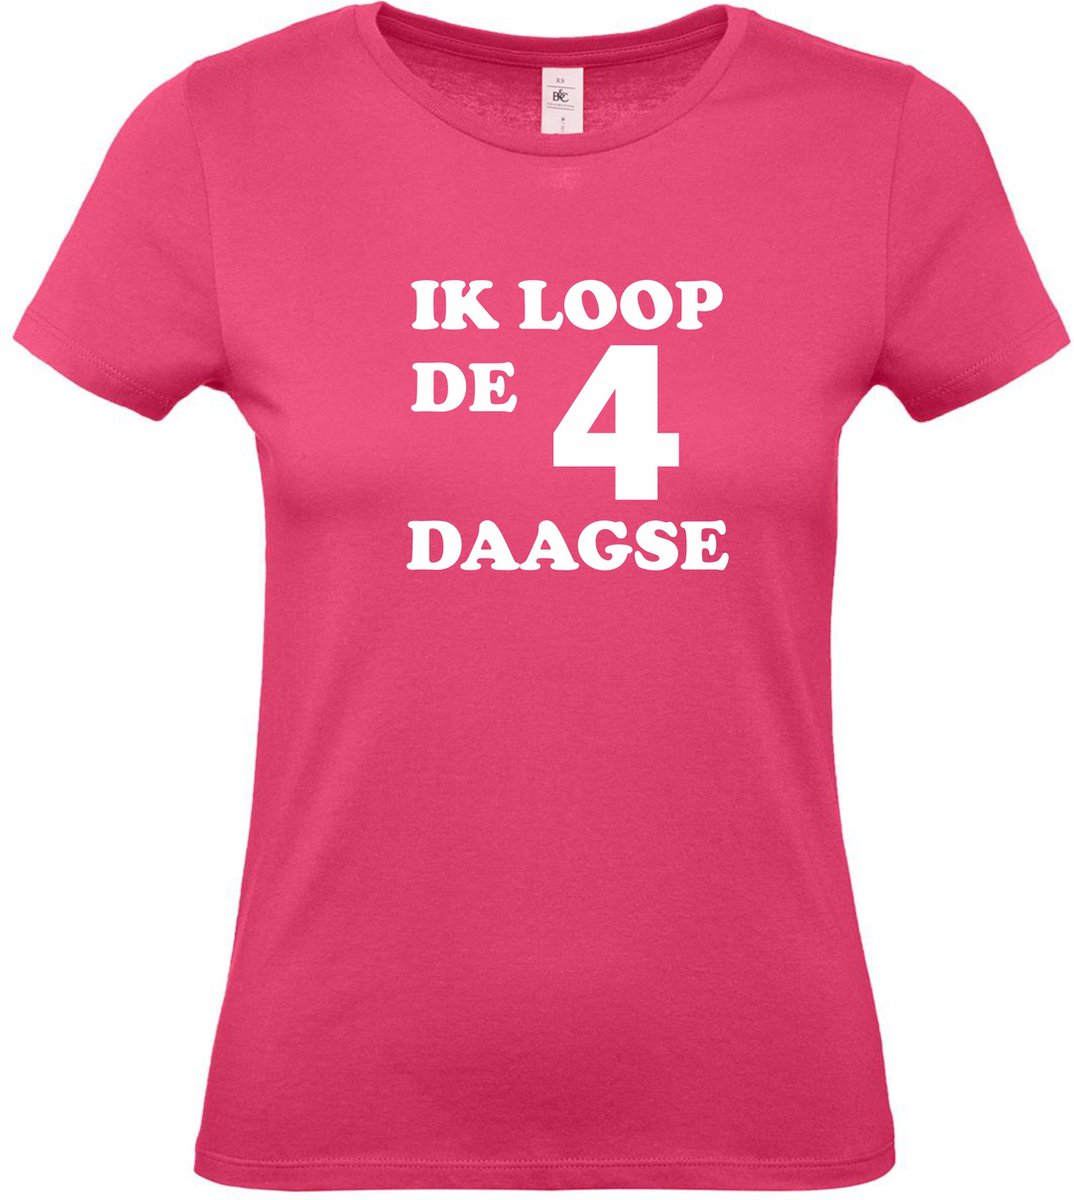 Dames t-shirt Ik loop de 4 daagse |Wandelvierdaagse | vierdaagse Nijmegen | Roze woensdag | Roze | maat S